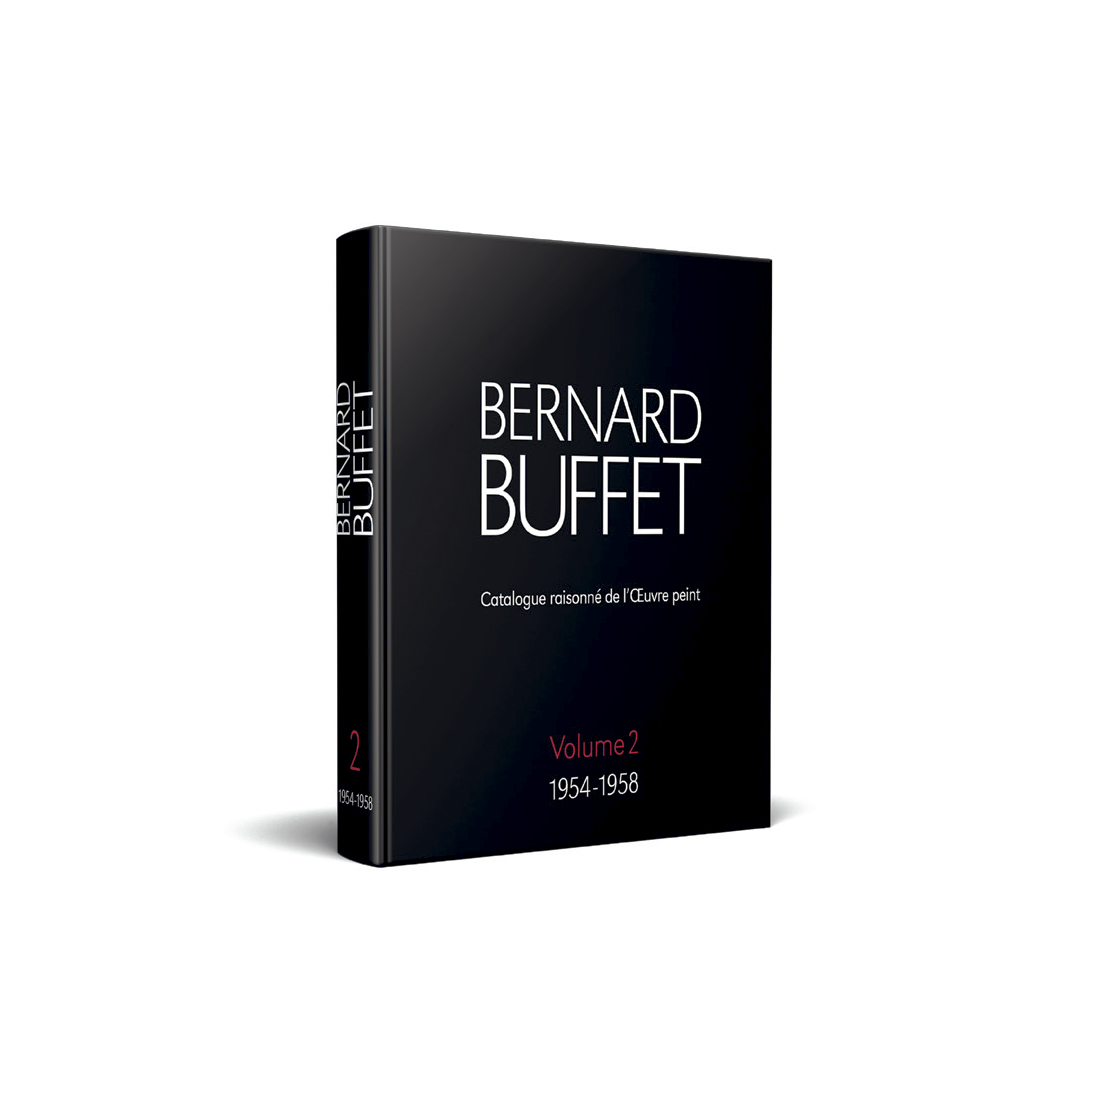 Bernard BUFFET (Volume 2)